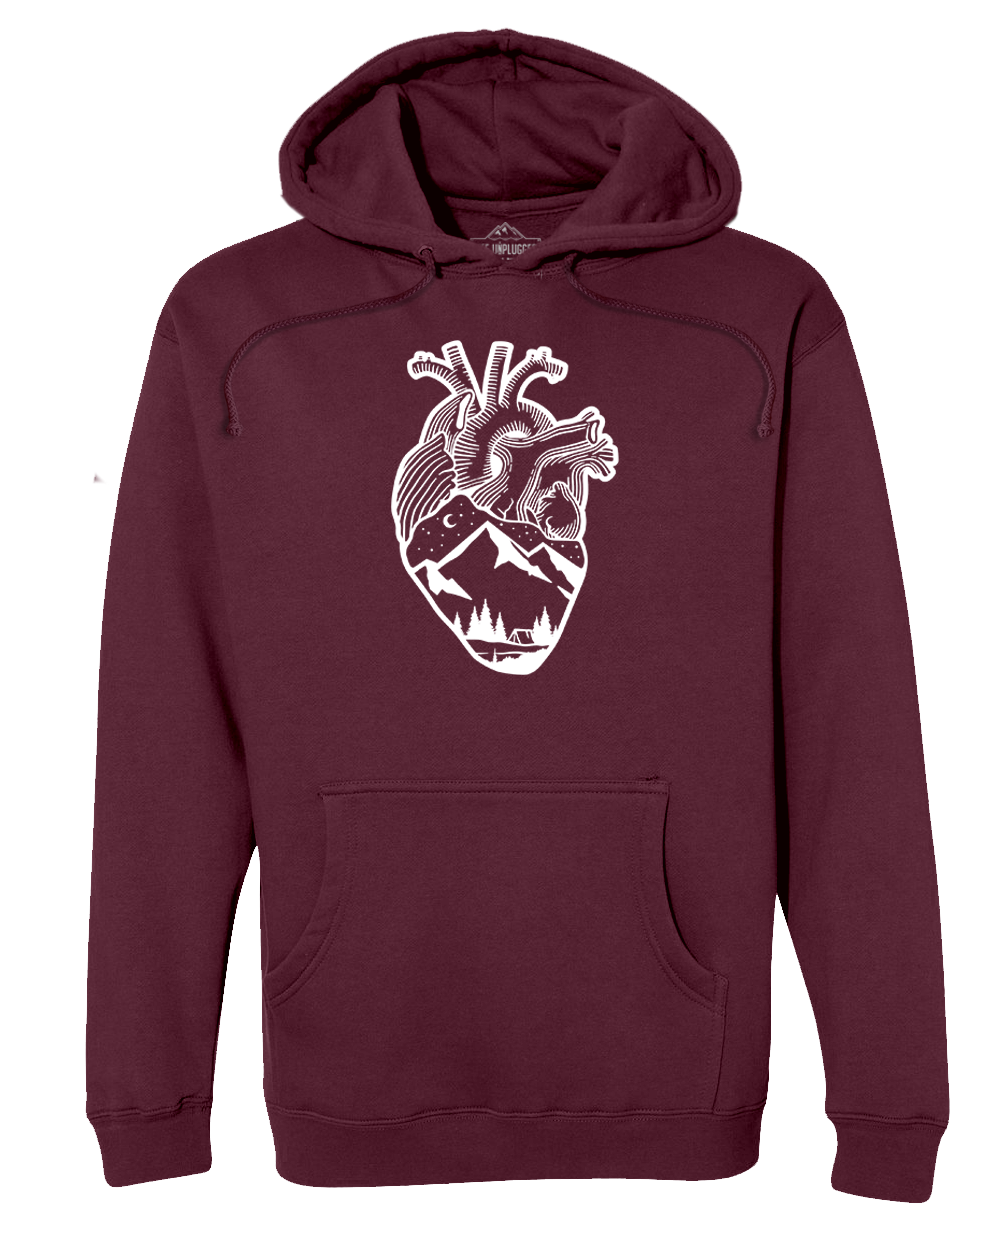 ANATOMICAL HEART (FULL CHEST) Premium Heavyweight Hooded Sweatshirt